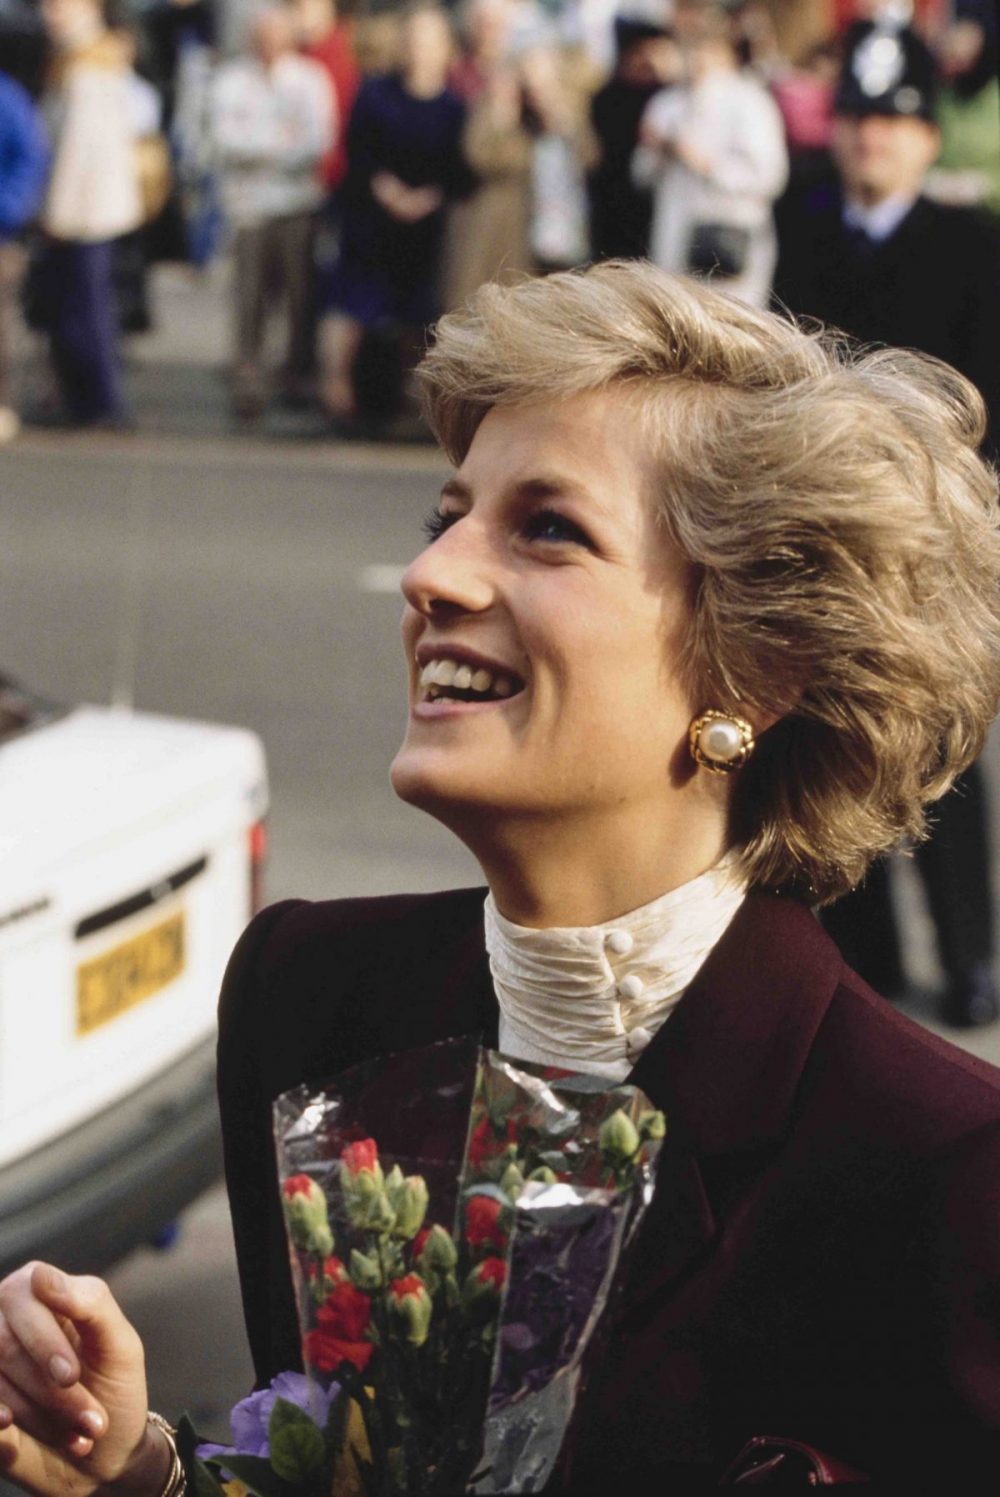 Princesa Diana Lady Di Diana Spencer morte 25 anos princesa de Gales Reino Unido monarquia britânica